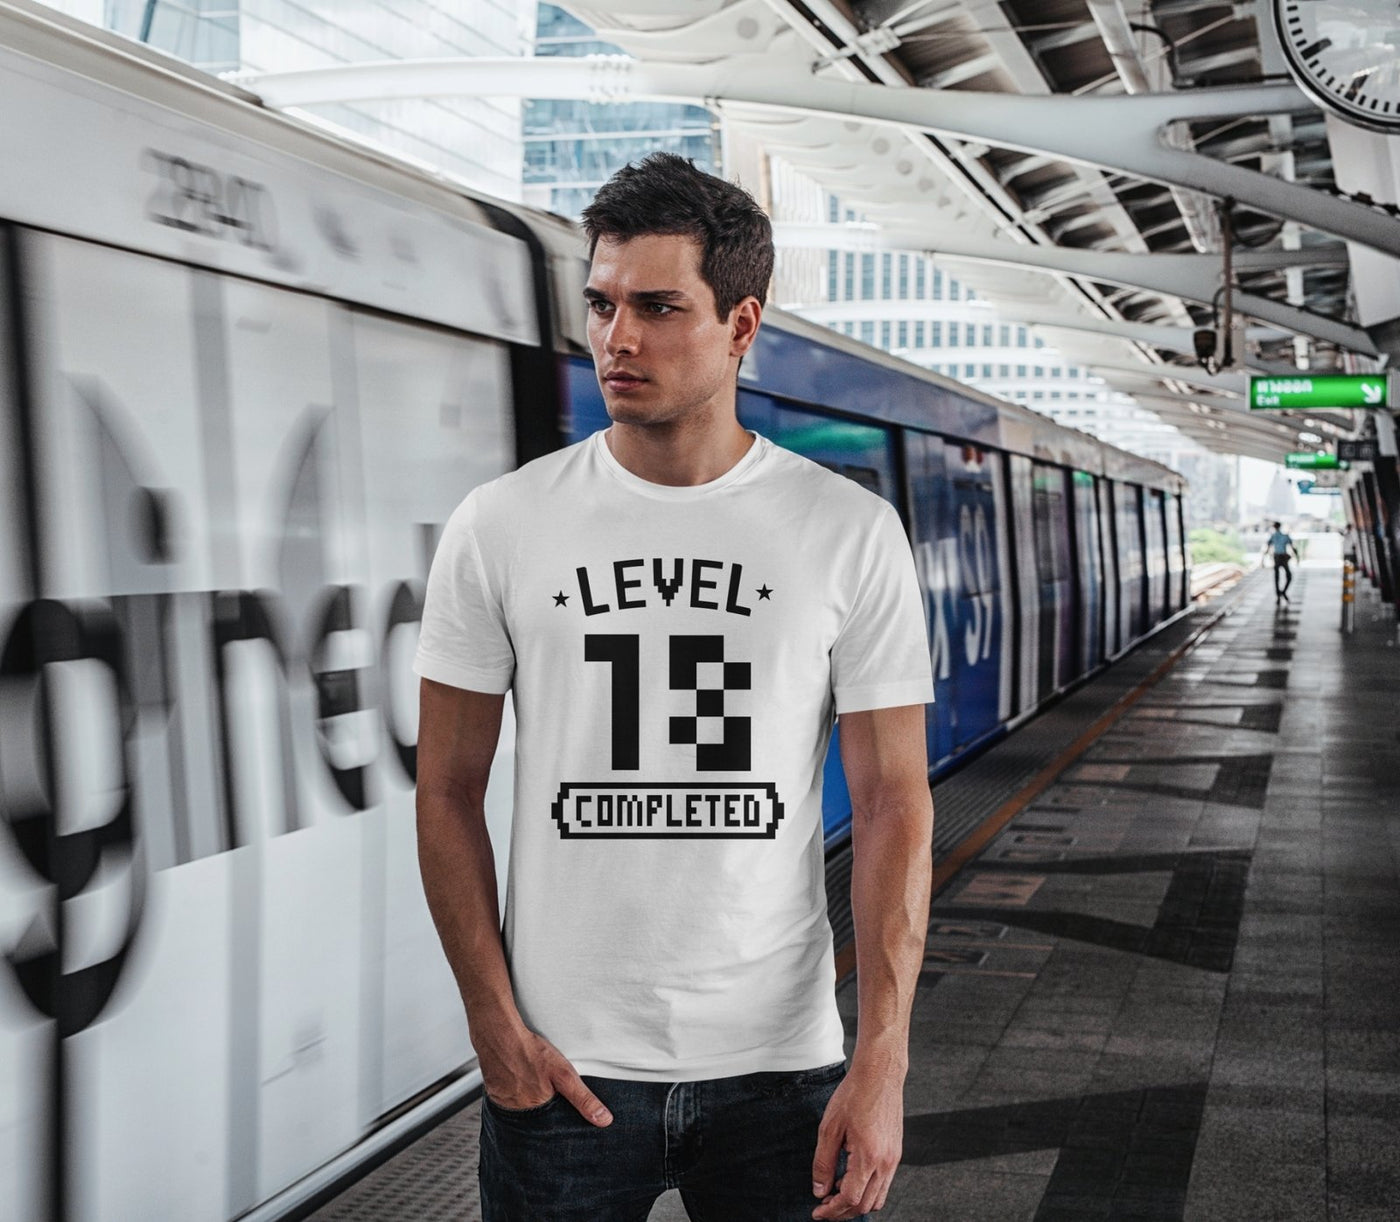 Bild: T-Shirt Herren - Level 18 completed Geschenkidee